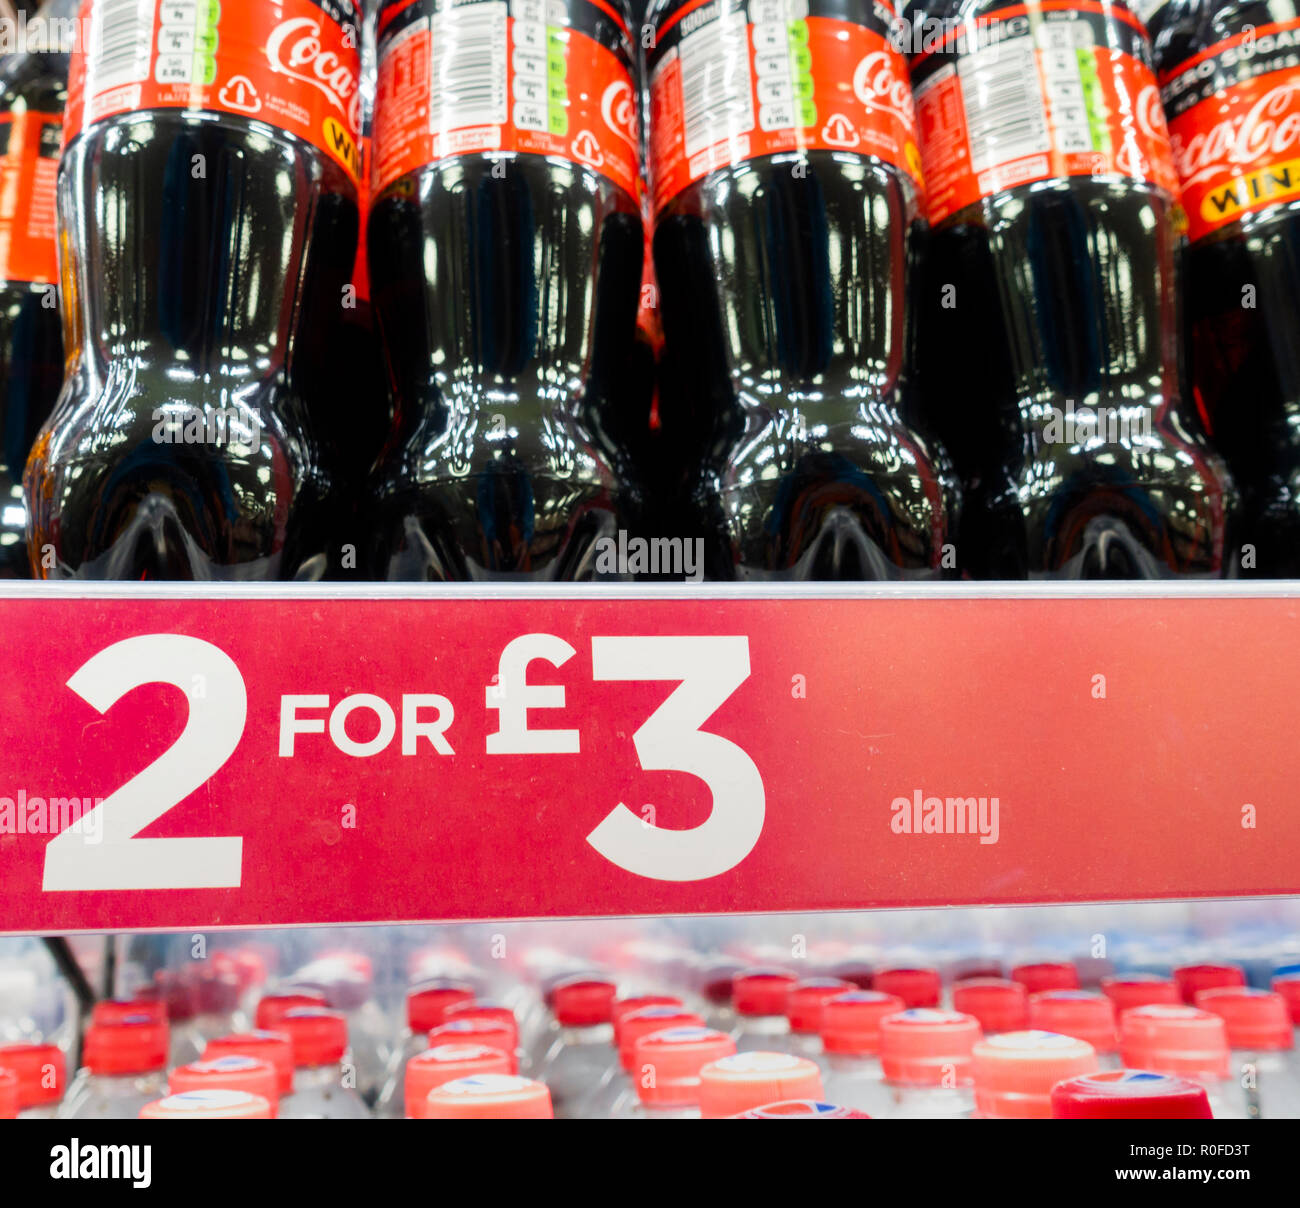 2 pour 3 sur l'offre des boissons gazeuses sucrées/Boutique au Royaume-Uni. Banque D'Images